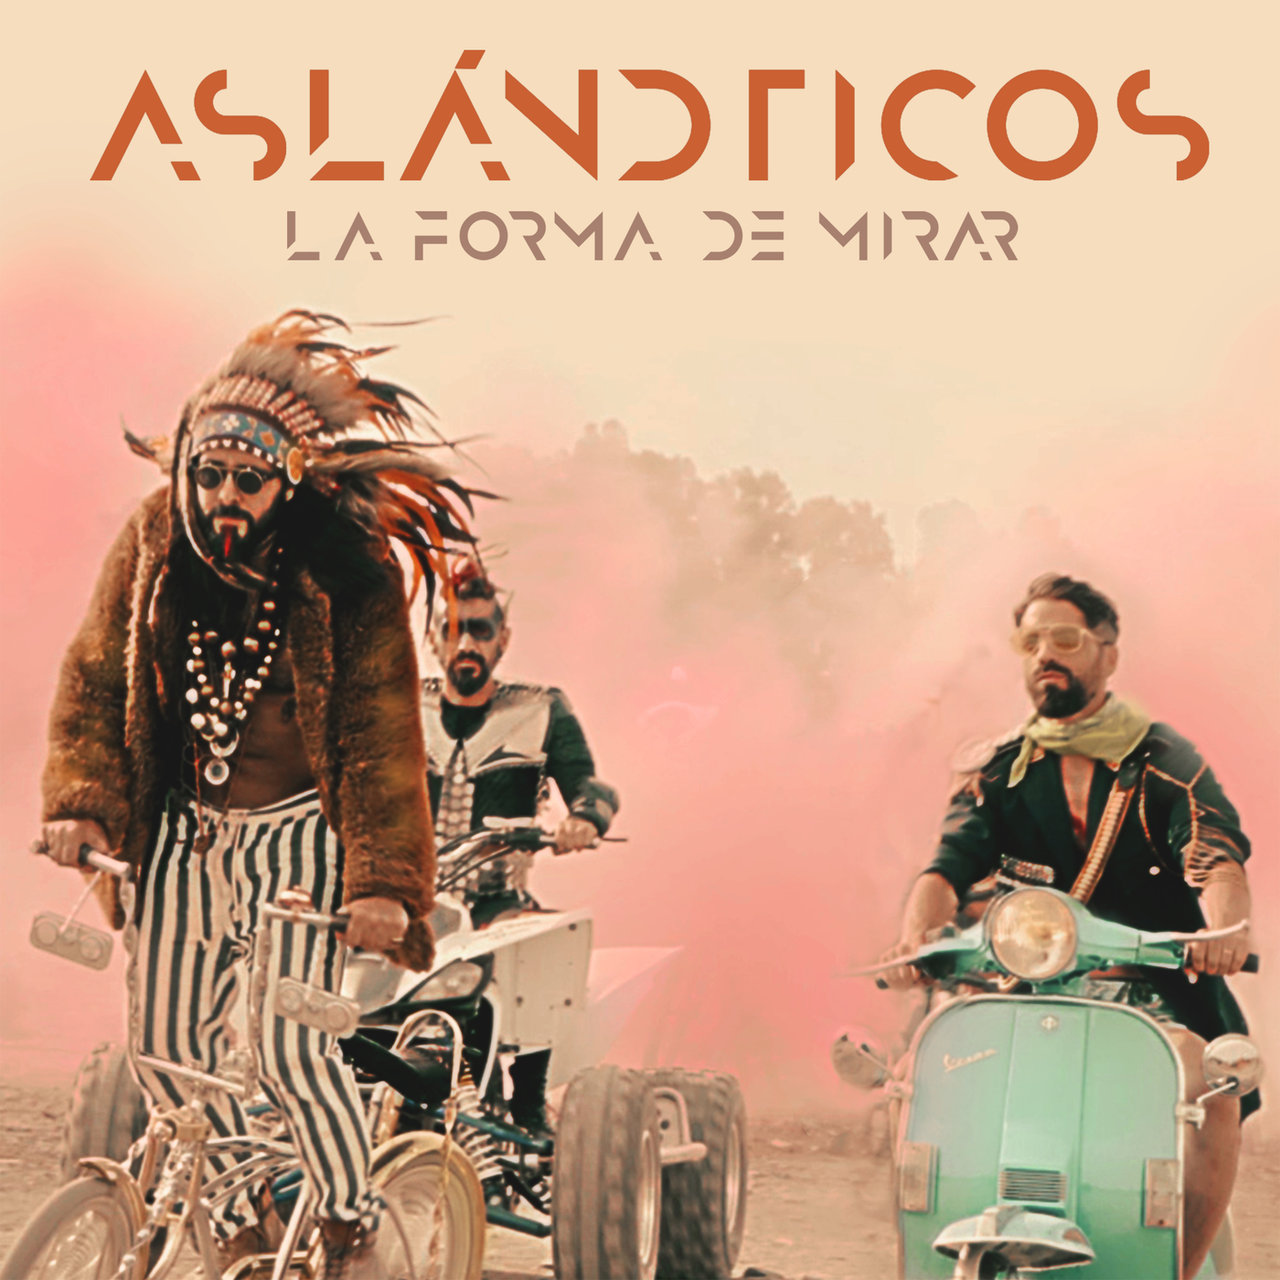 Los Aslándticos La Forma de Mirar cover artwork